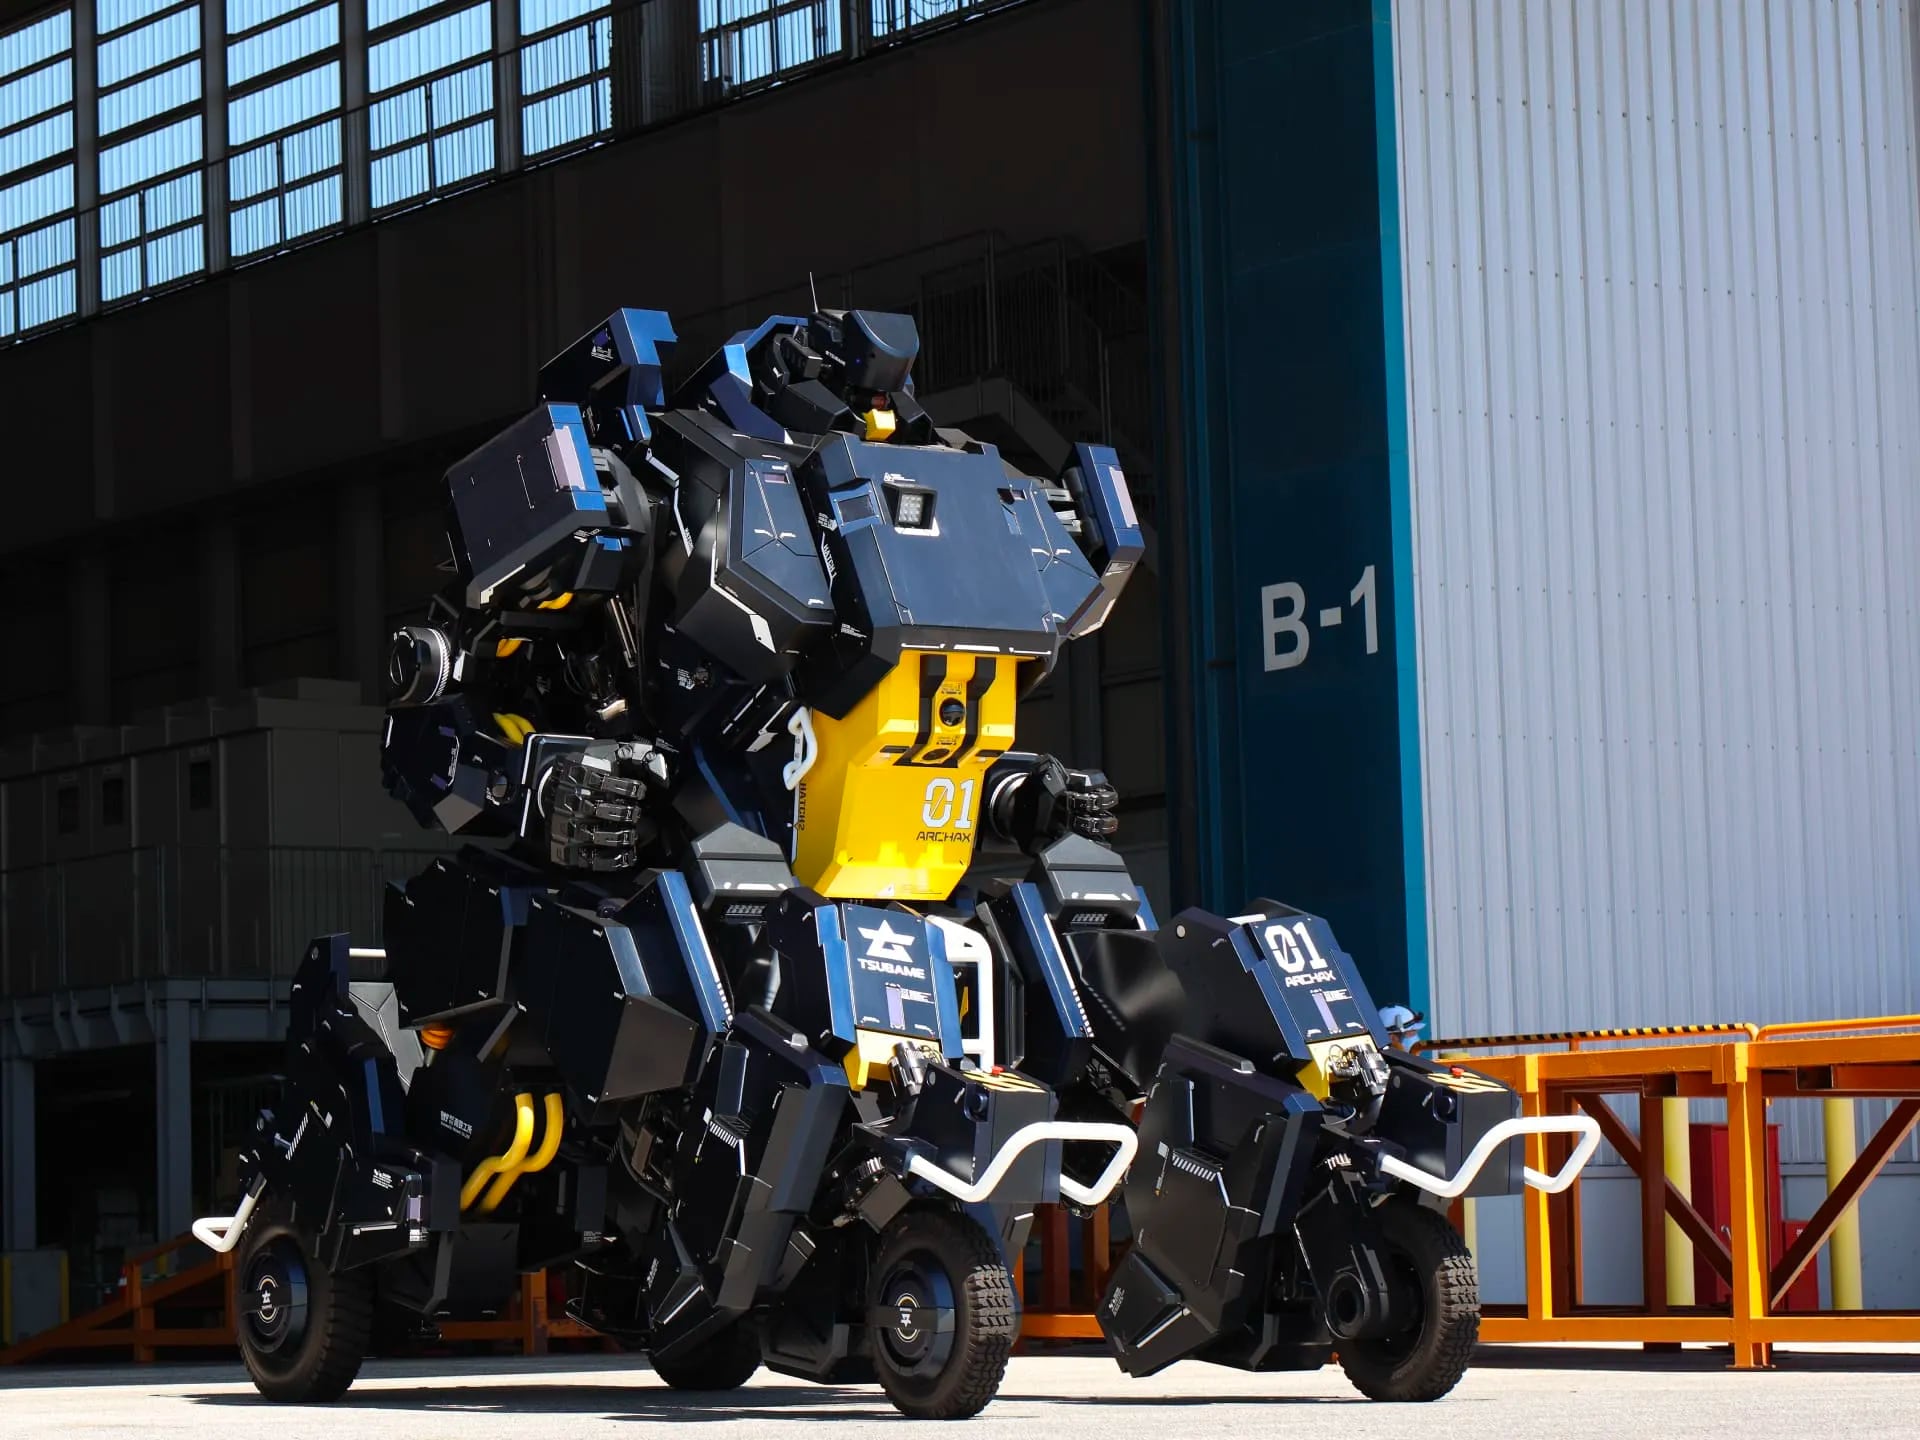 Tsubame Industries zademonstrowało transformator robota załogowego Archax 01 w akcji (wideo) 